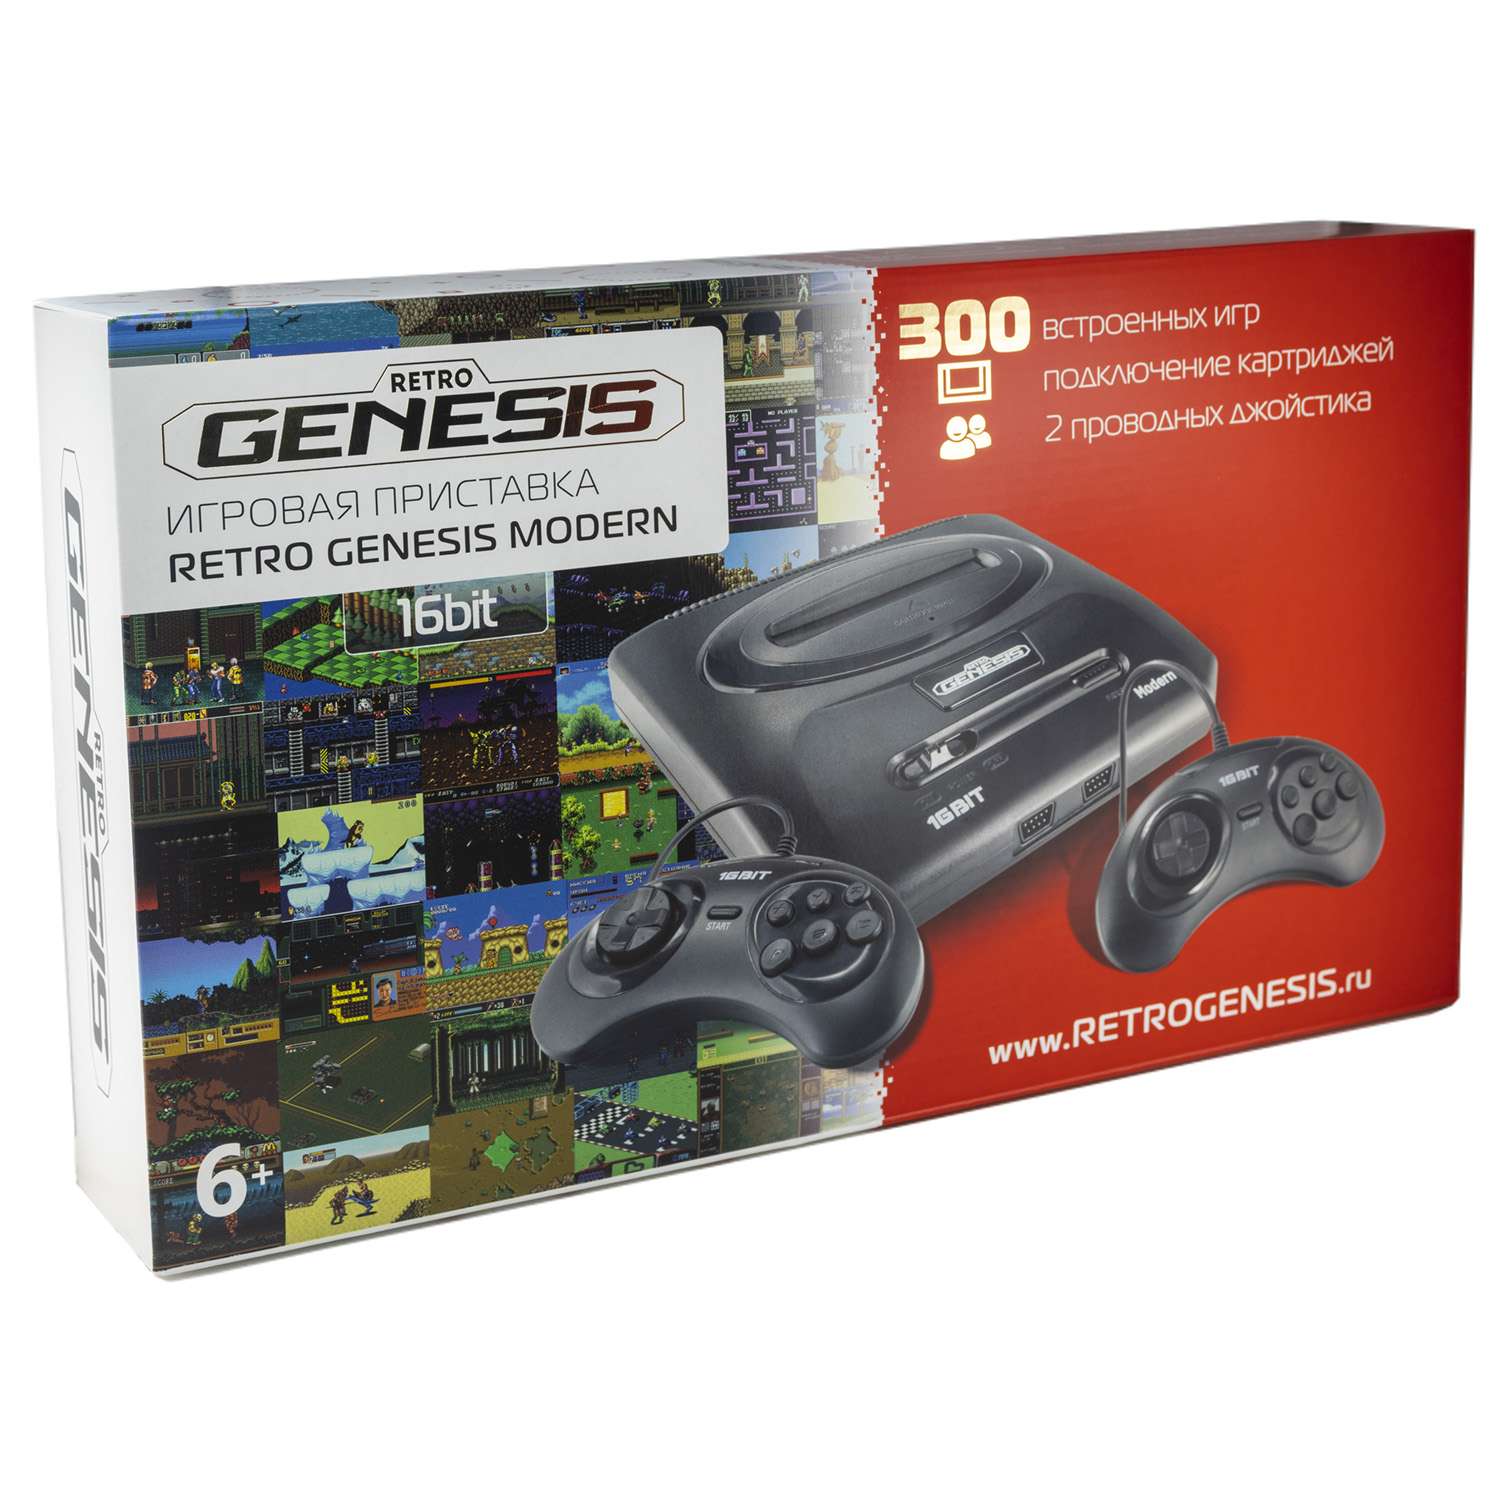 Игровая приставка для детей Retro Genesis SEGA Retro Genesis Modern + 300 игр + 2 джойстика модель: ZD-04a Серия: ZD-00 - фото 2